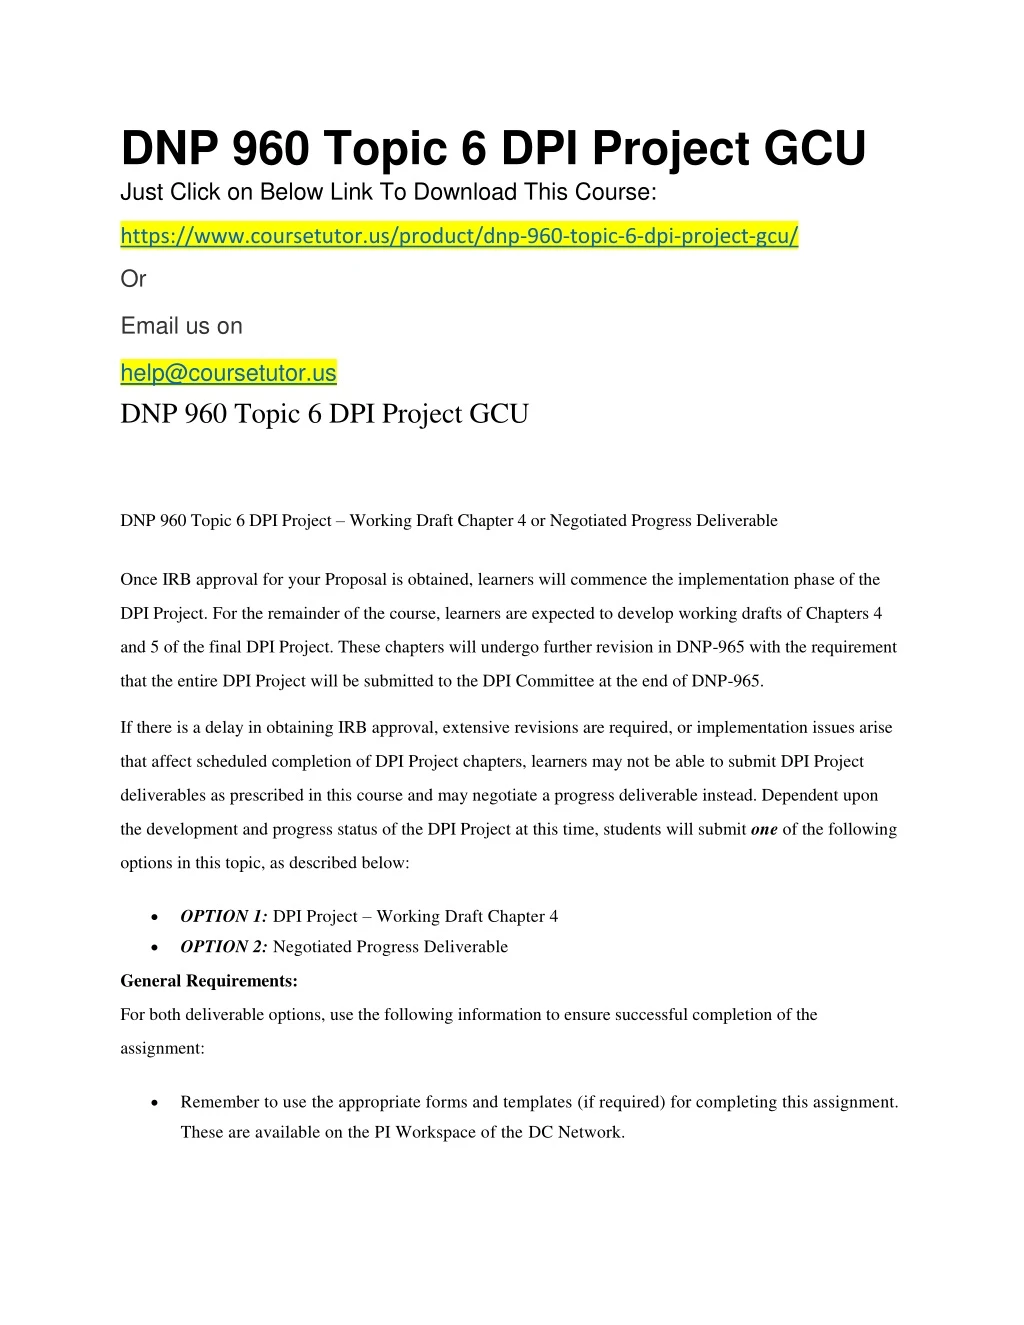 dnp 960 topic 6 dpi project gcu just click